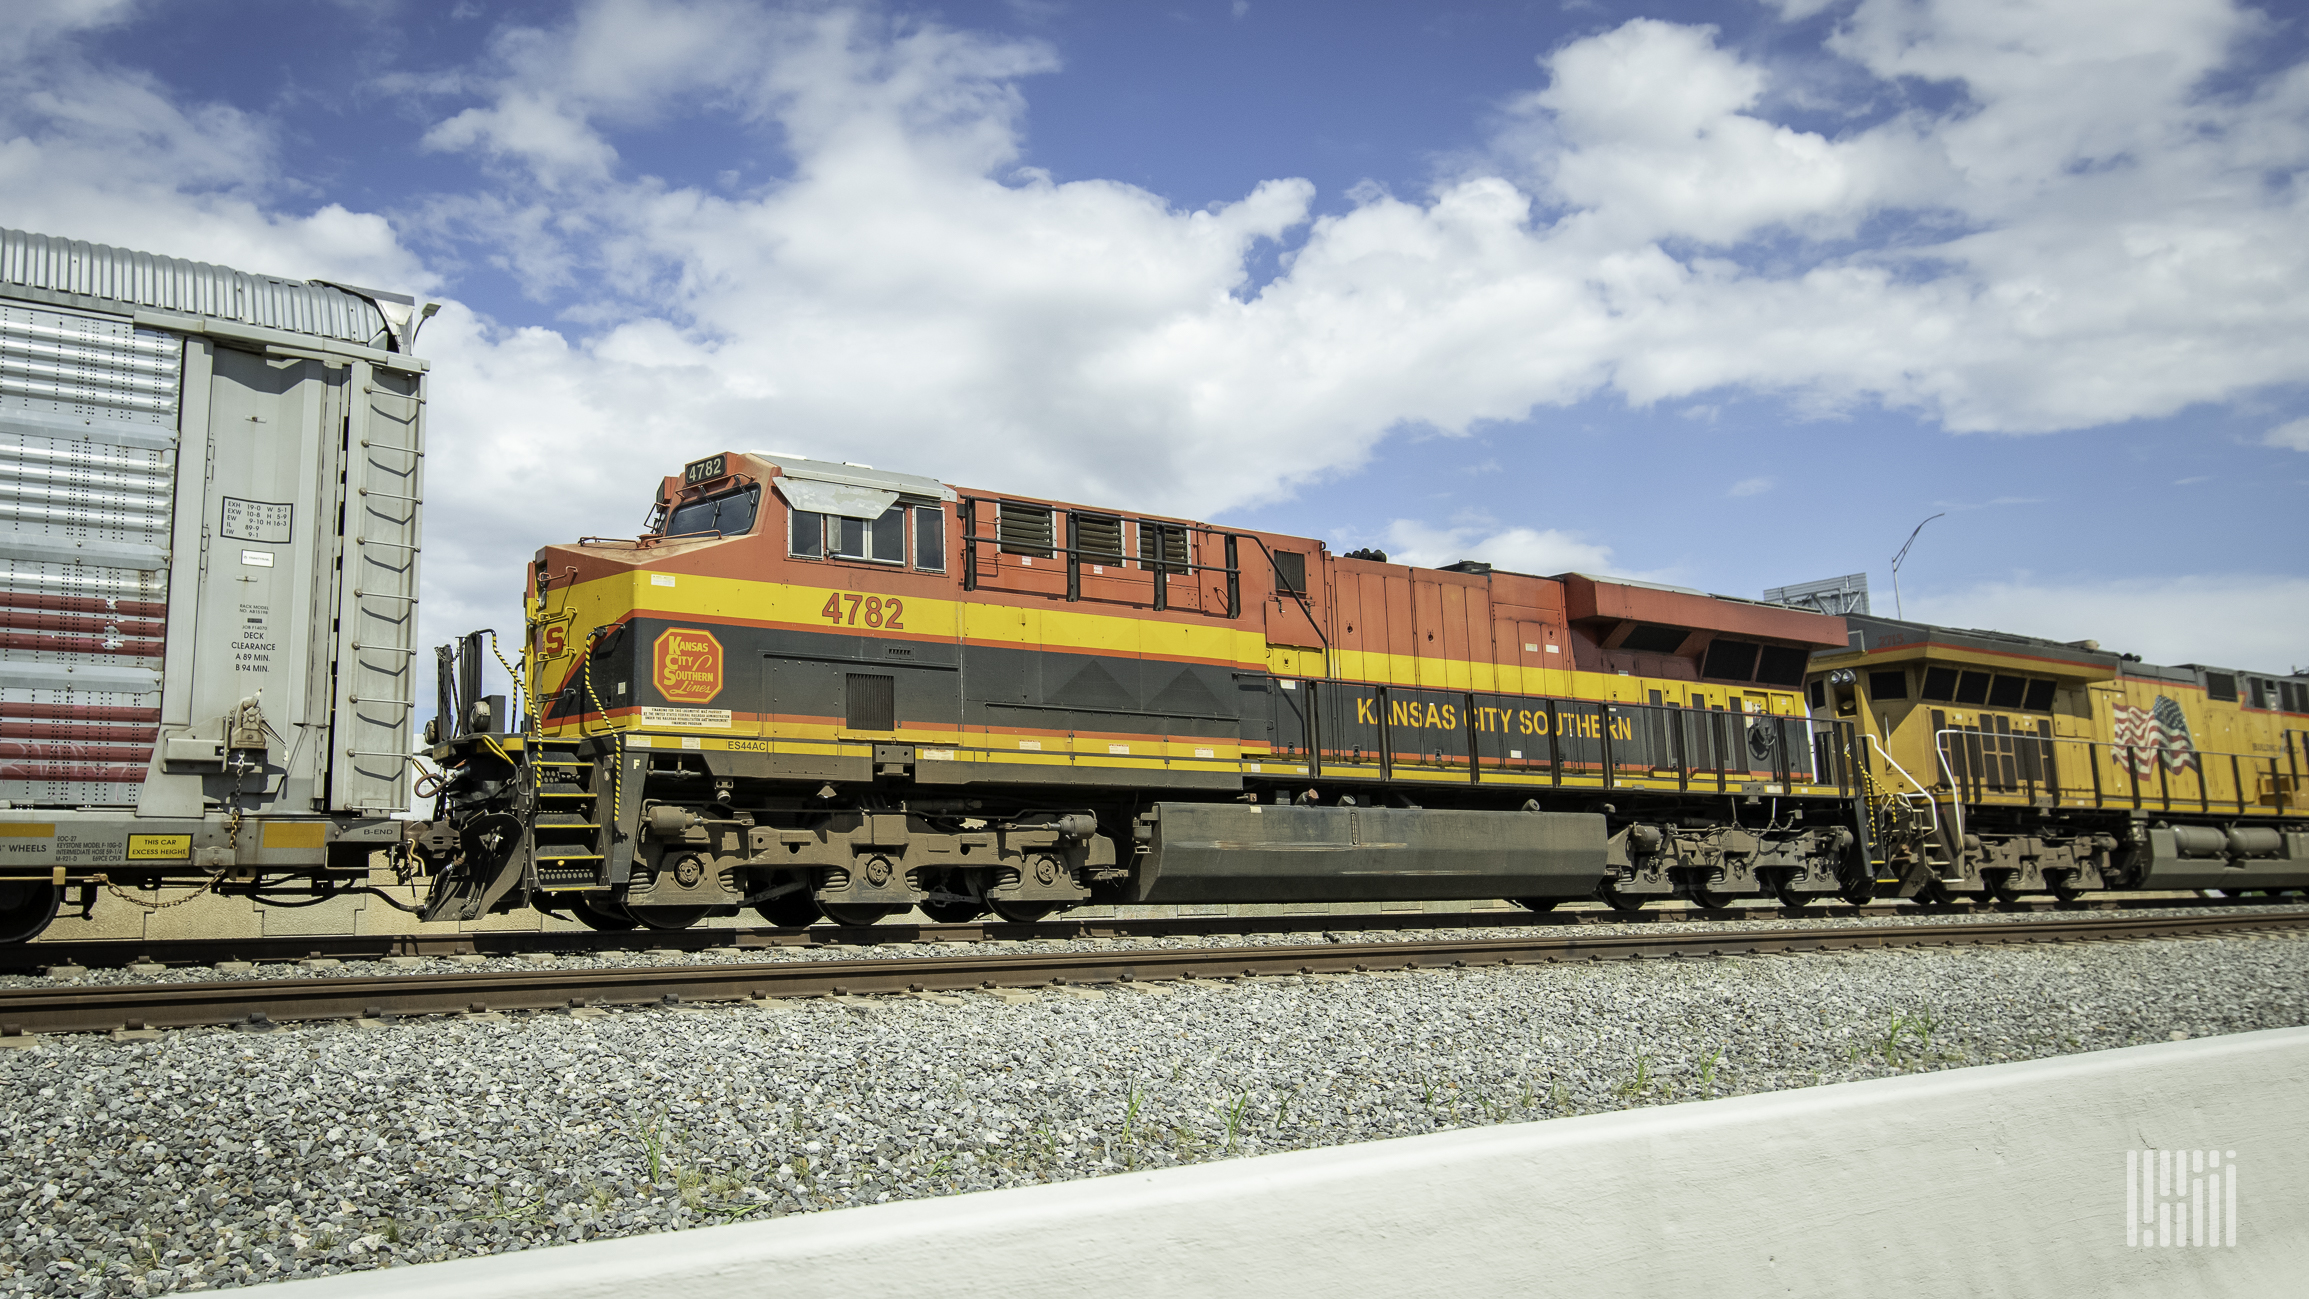 A photograph of a KCS train at a rail yard.